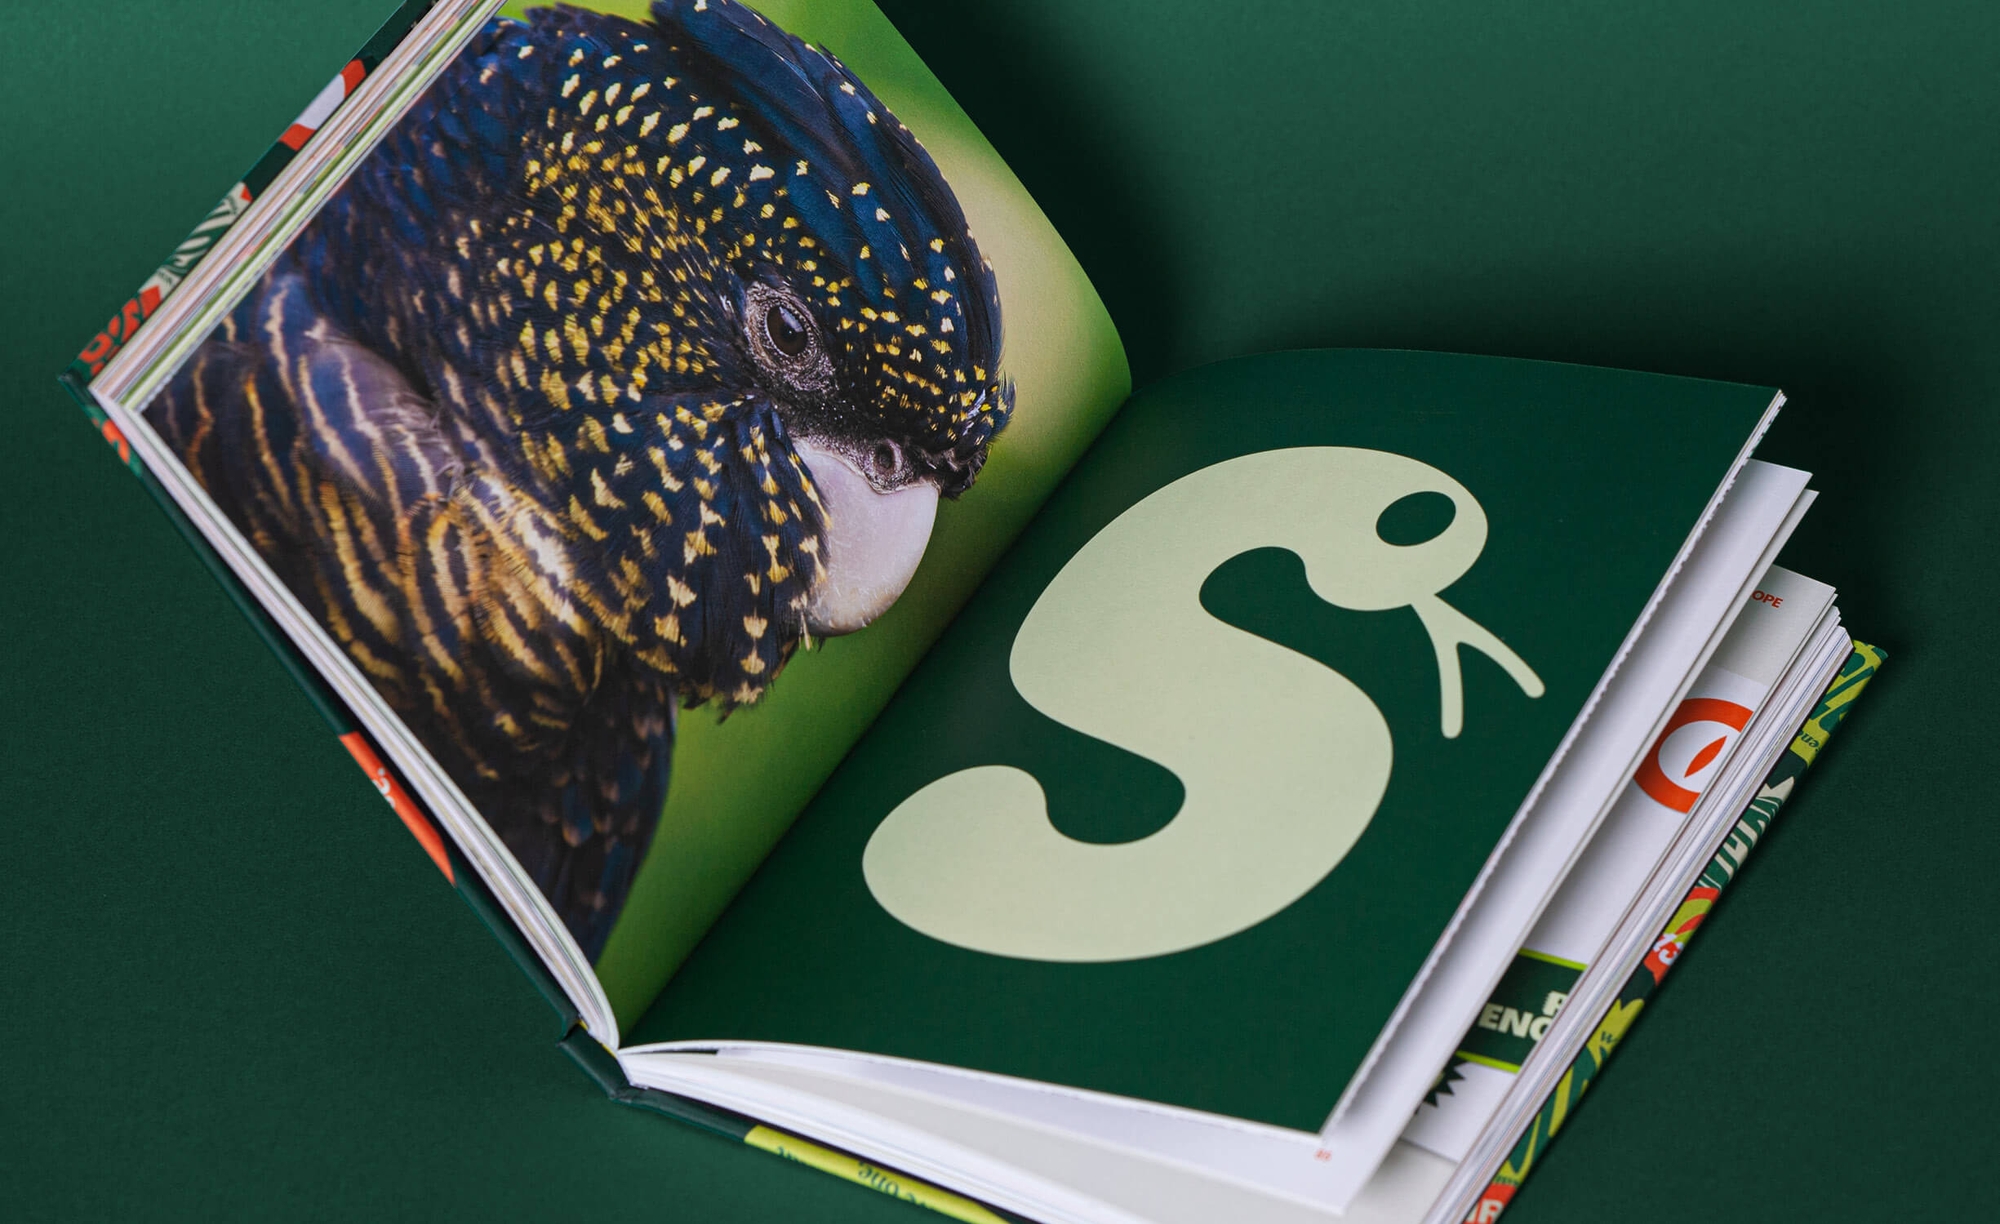 Reptile Encounters - Brandbook Internal Spread Snake | Atollon - a design company